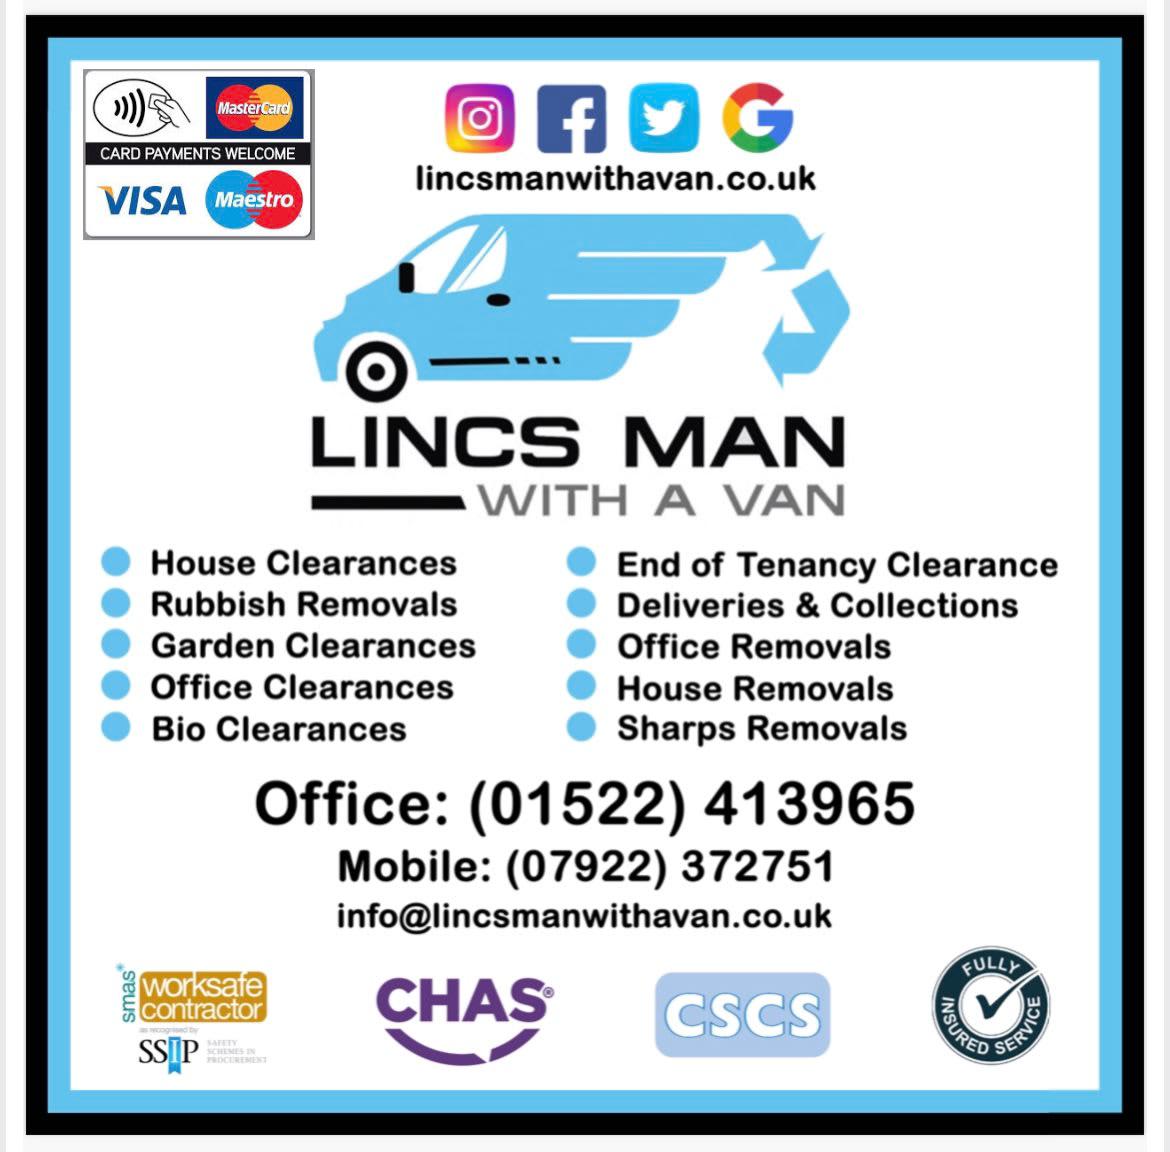 Images Lincs Man With a Van Ltd